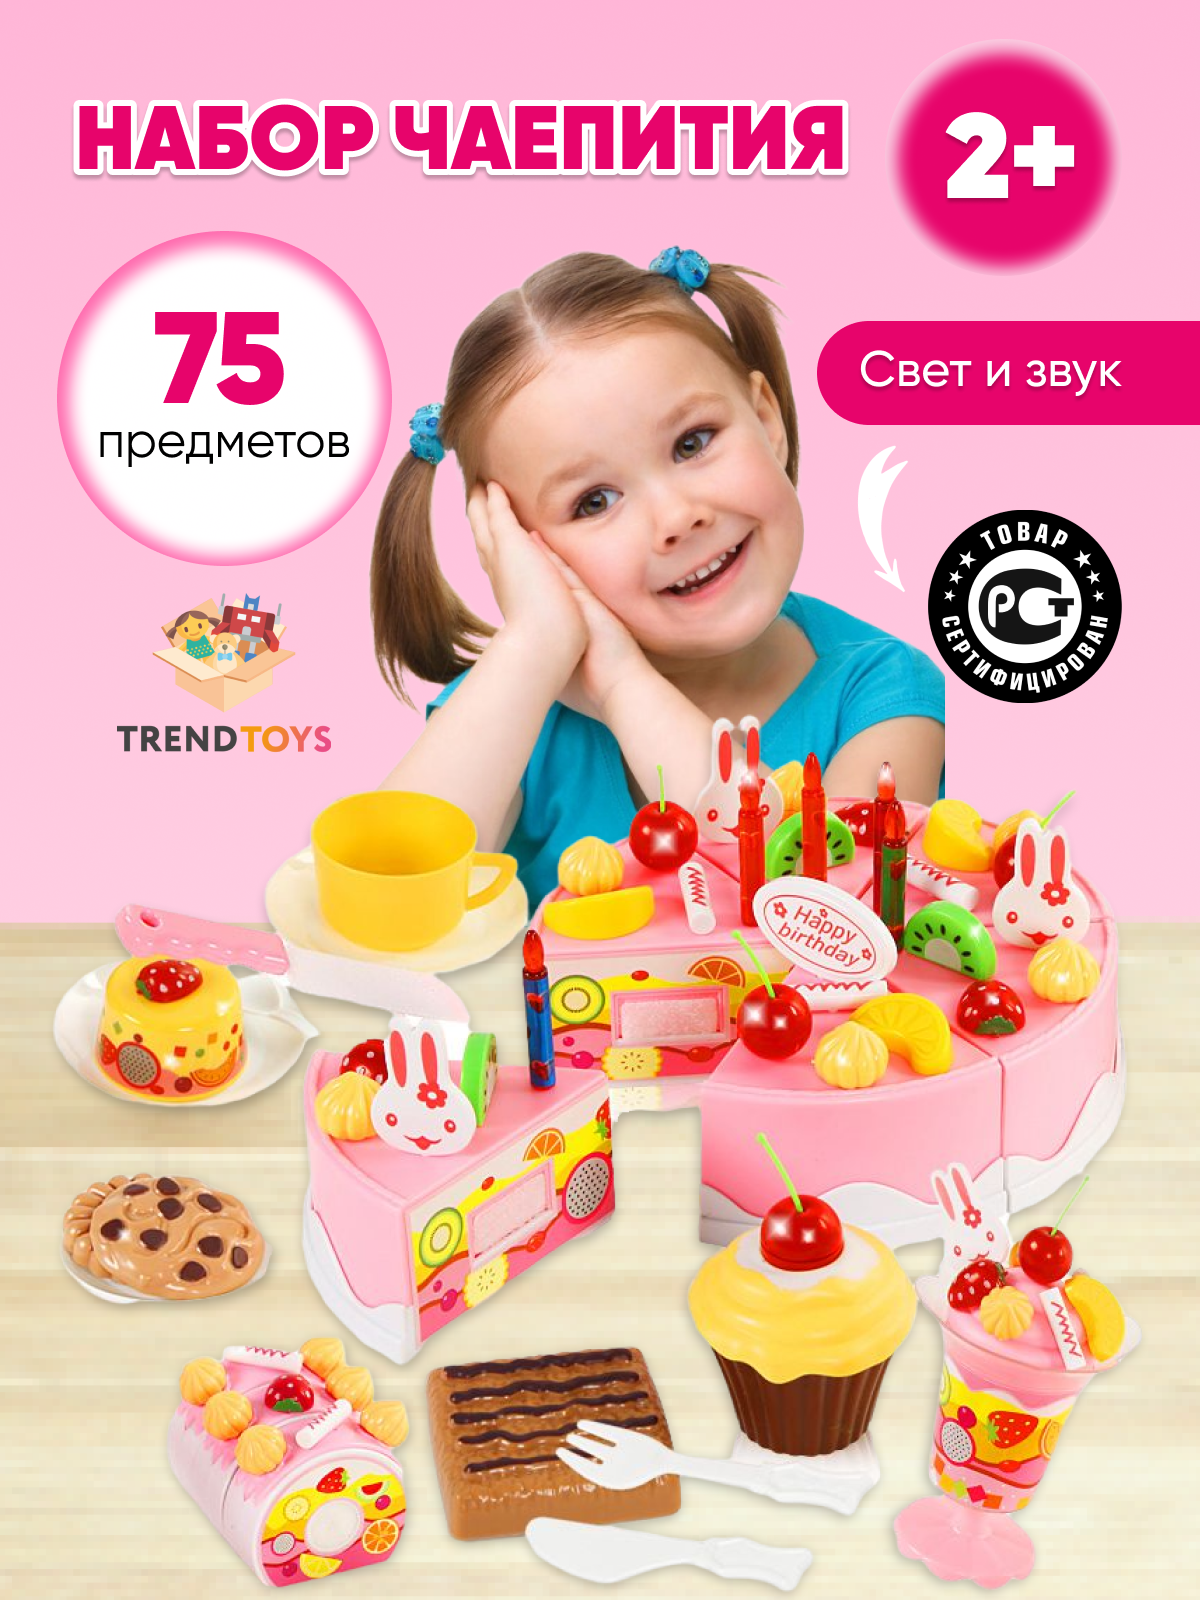 Игровой набор Праздничный торт, игрушечные продукты и еда